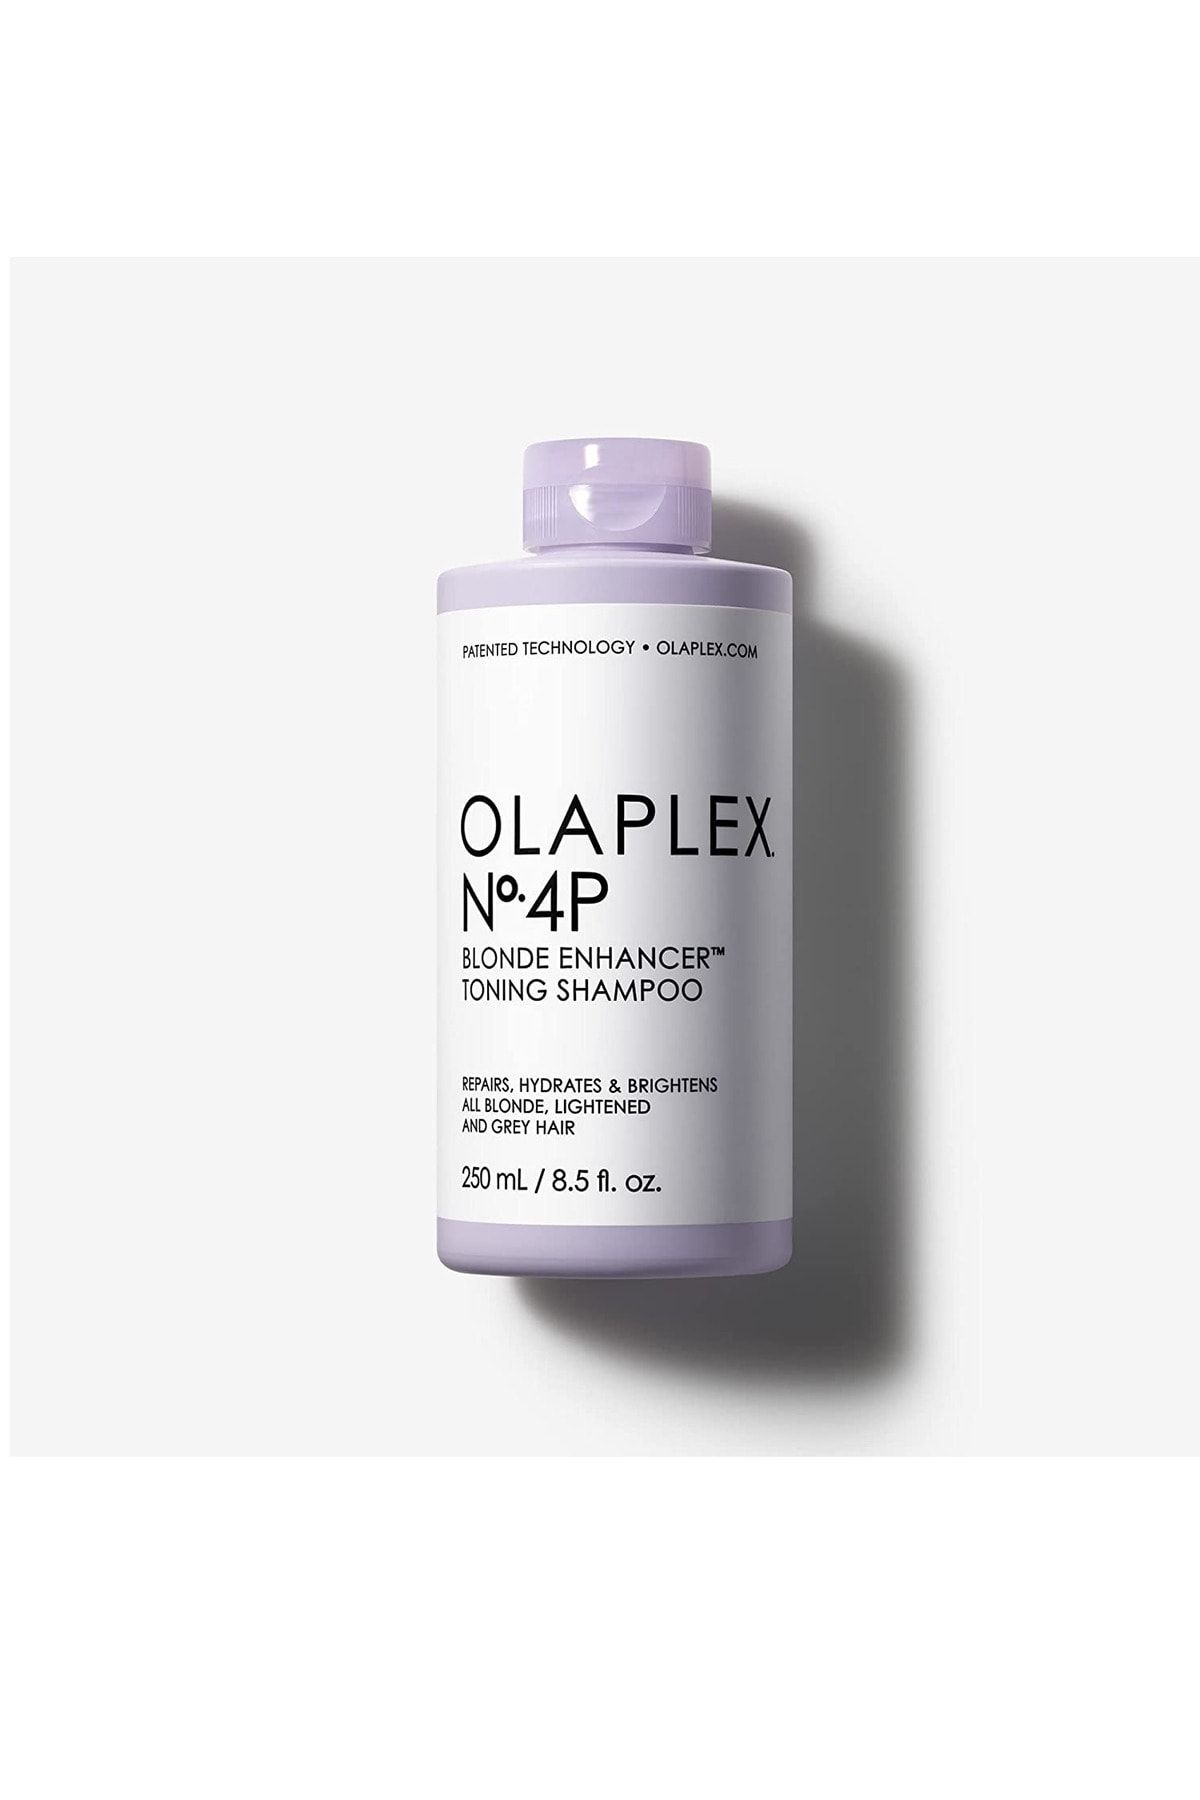 Olaplex No. 4P Blonde Enhancer Turunculaşma Karşıtı Renk Koruyucu Şampuan 250ml Sarı Açık Saçlar